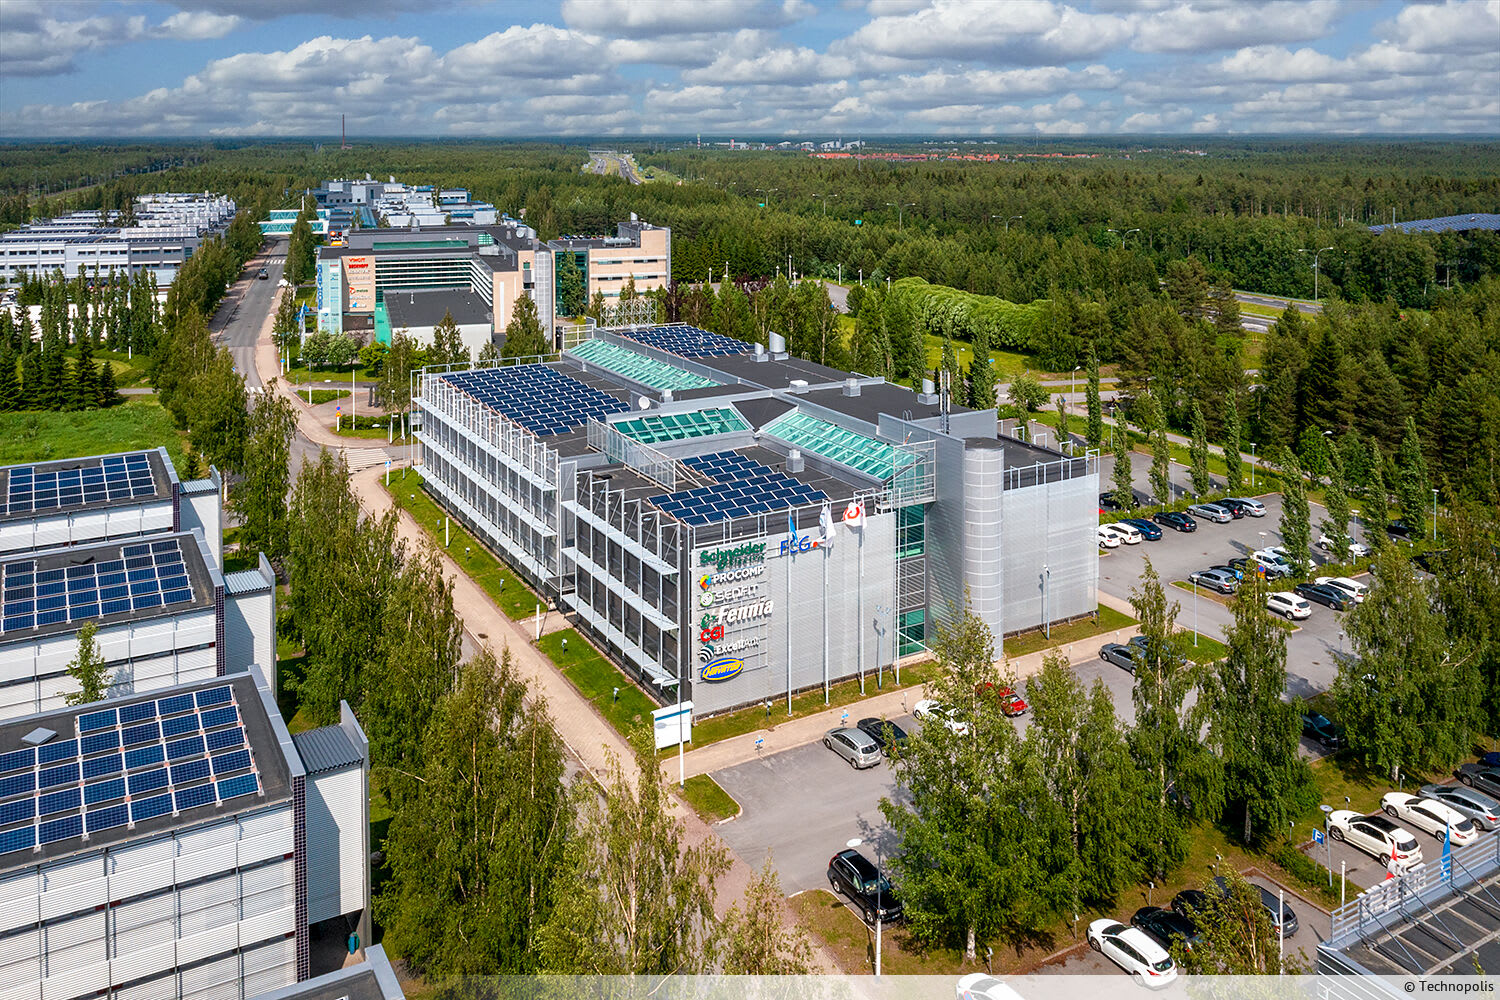 Vuokrattavana moderni ensimmäisen kerroksen toimistotila Technopolis Linnanmaan Elektroniikkatieltä. Tila koostuu useammasta työhuoneesta.